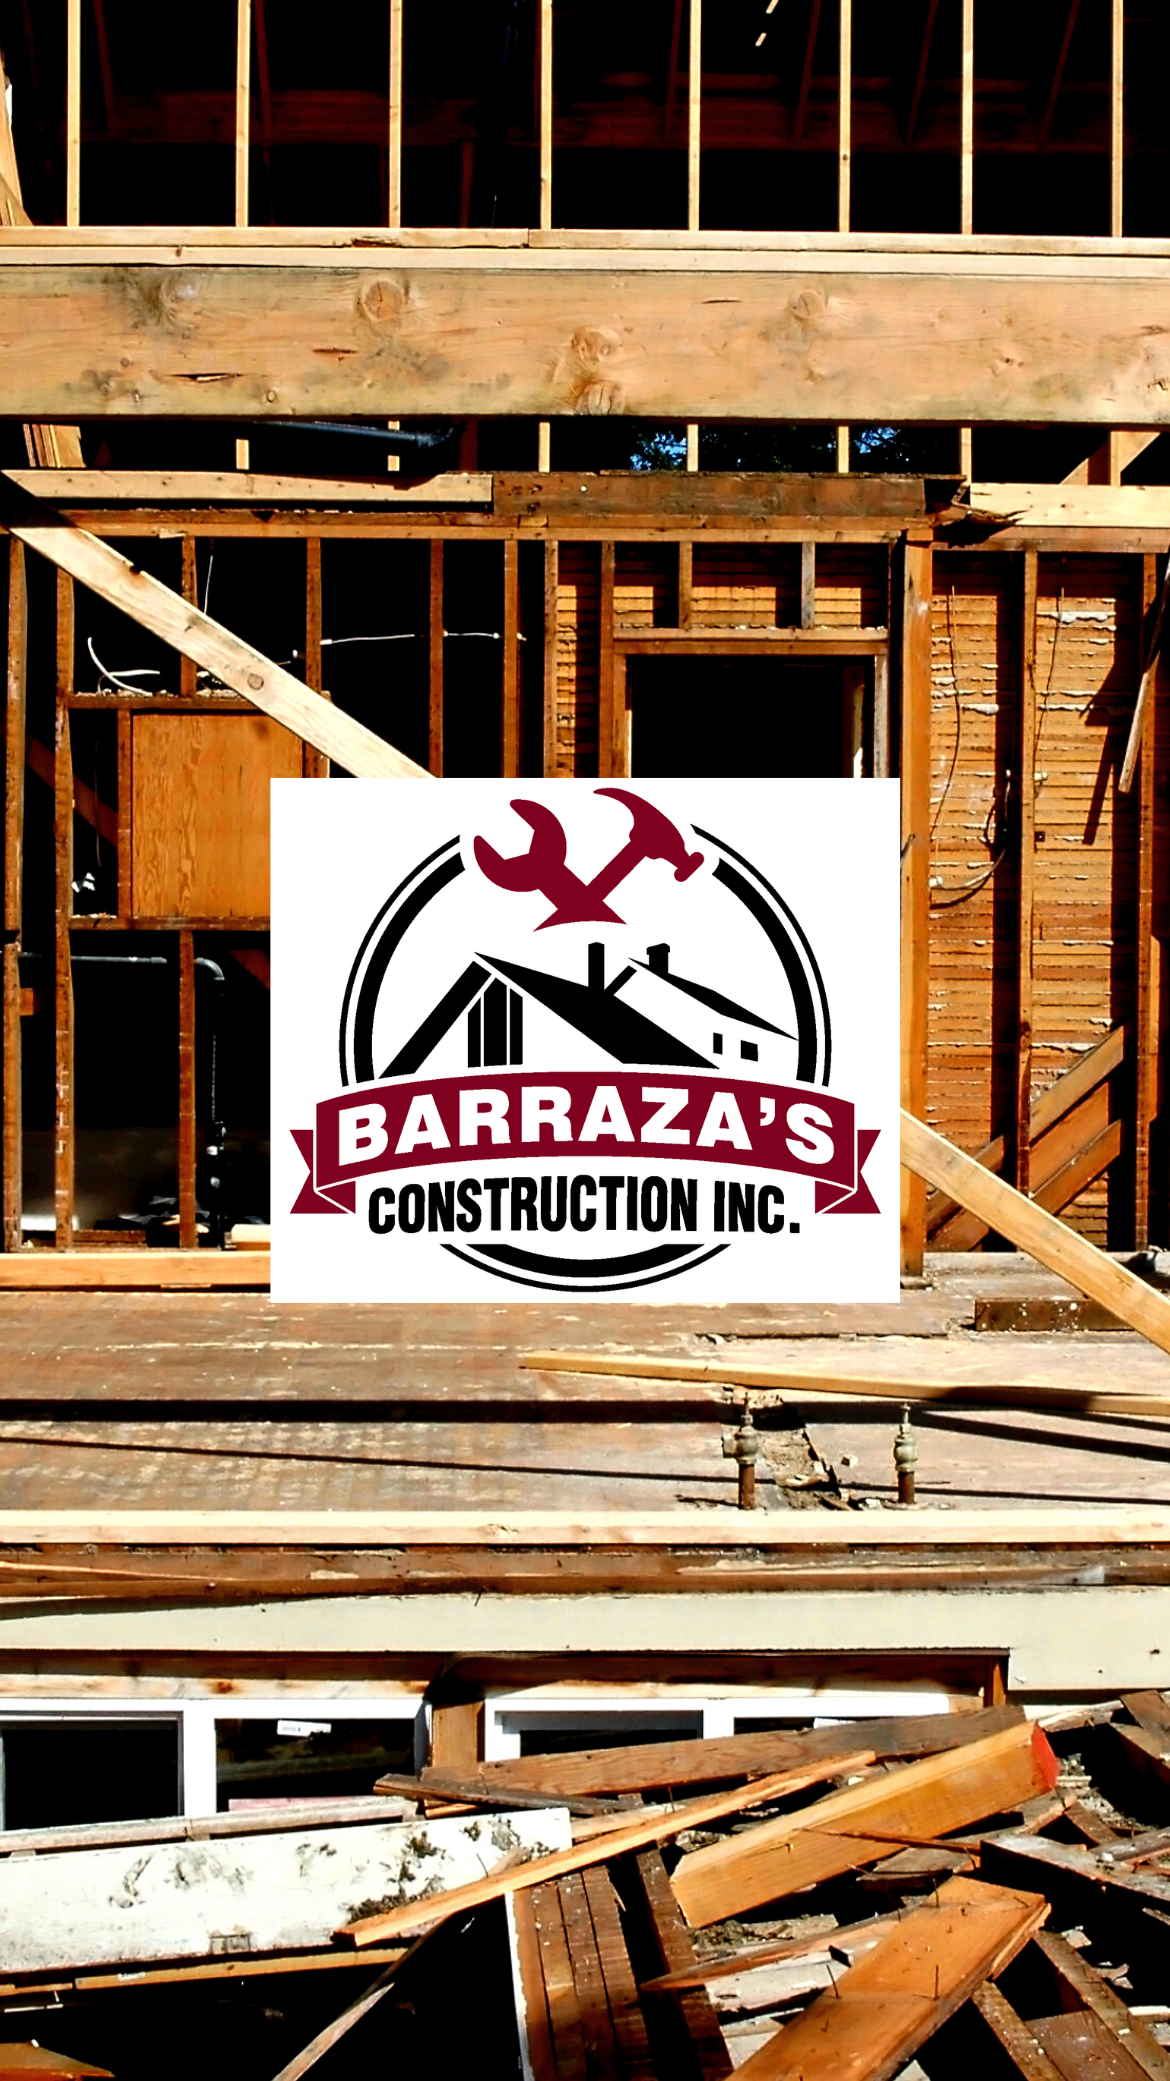 Barraza's Construction